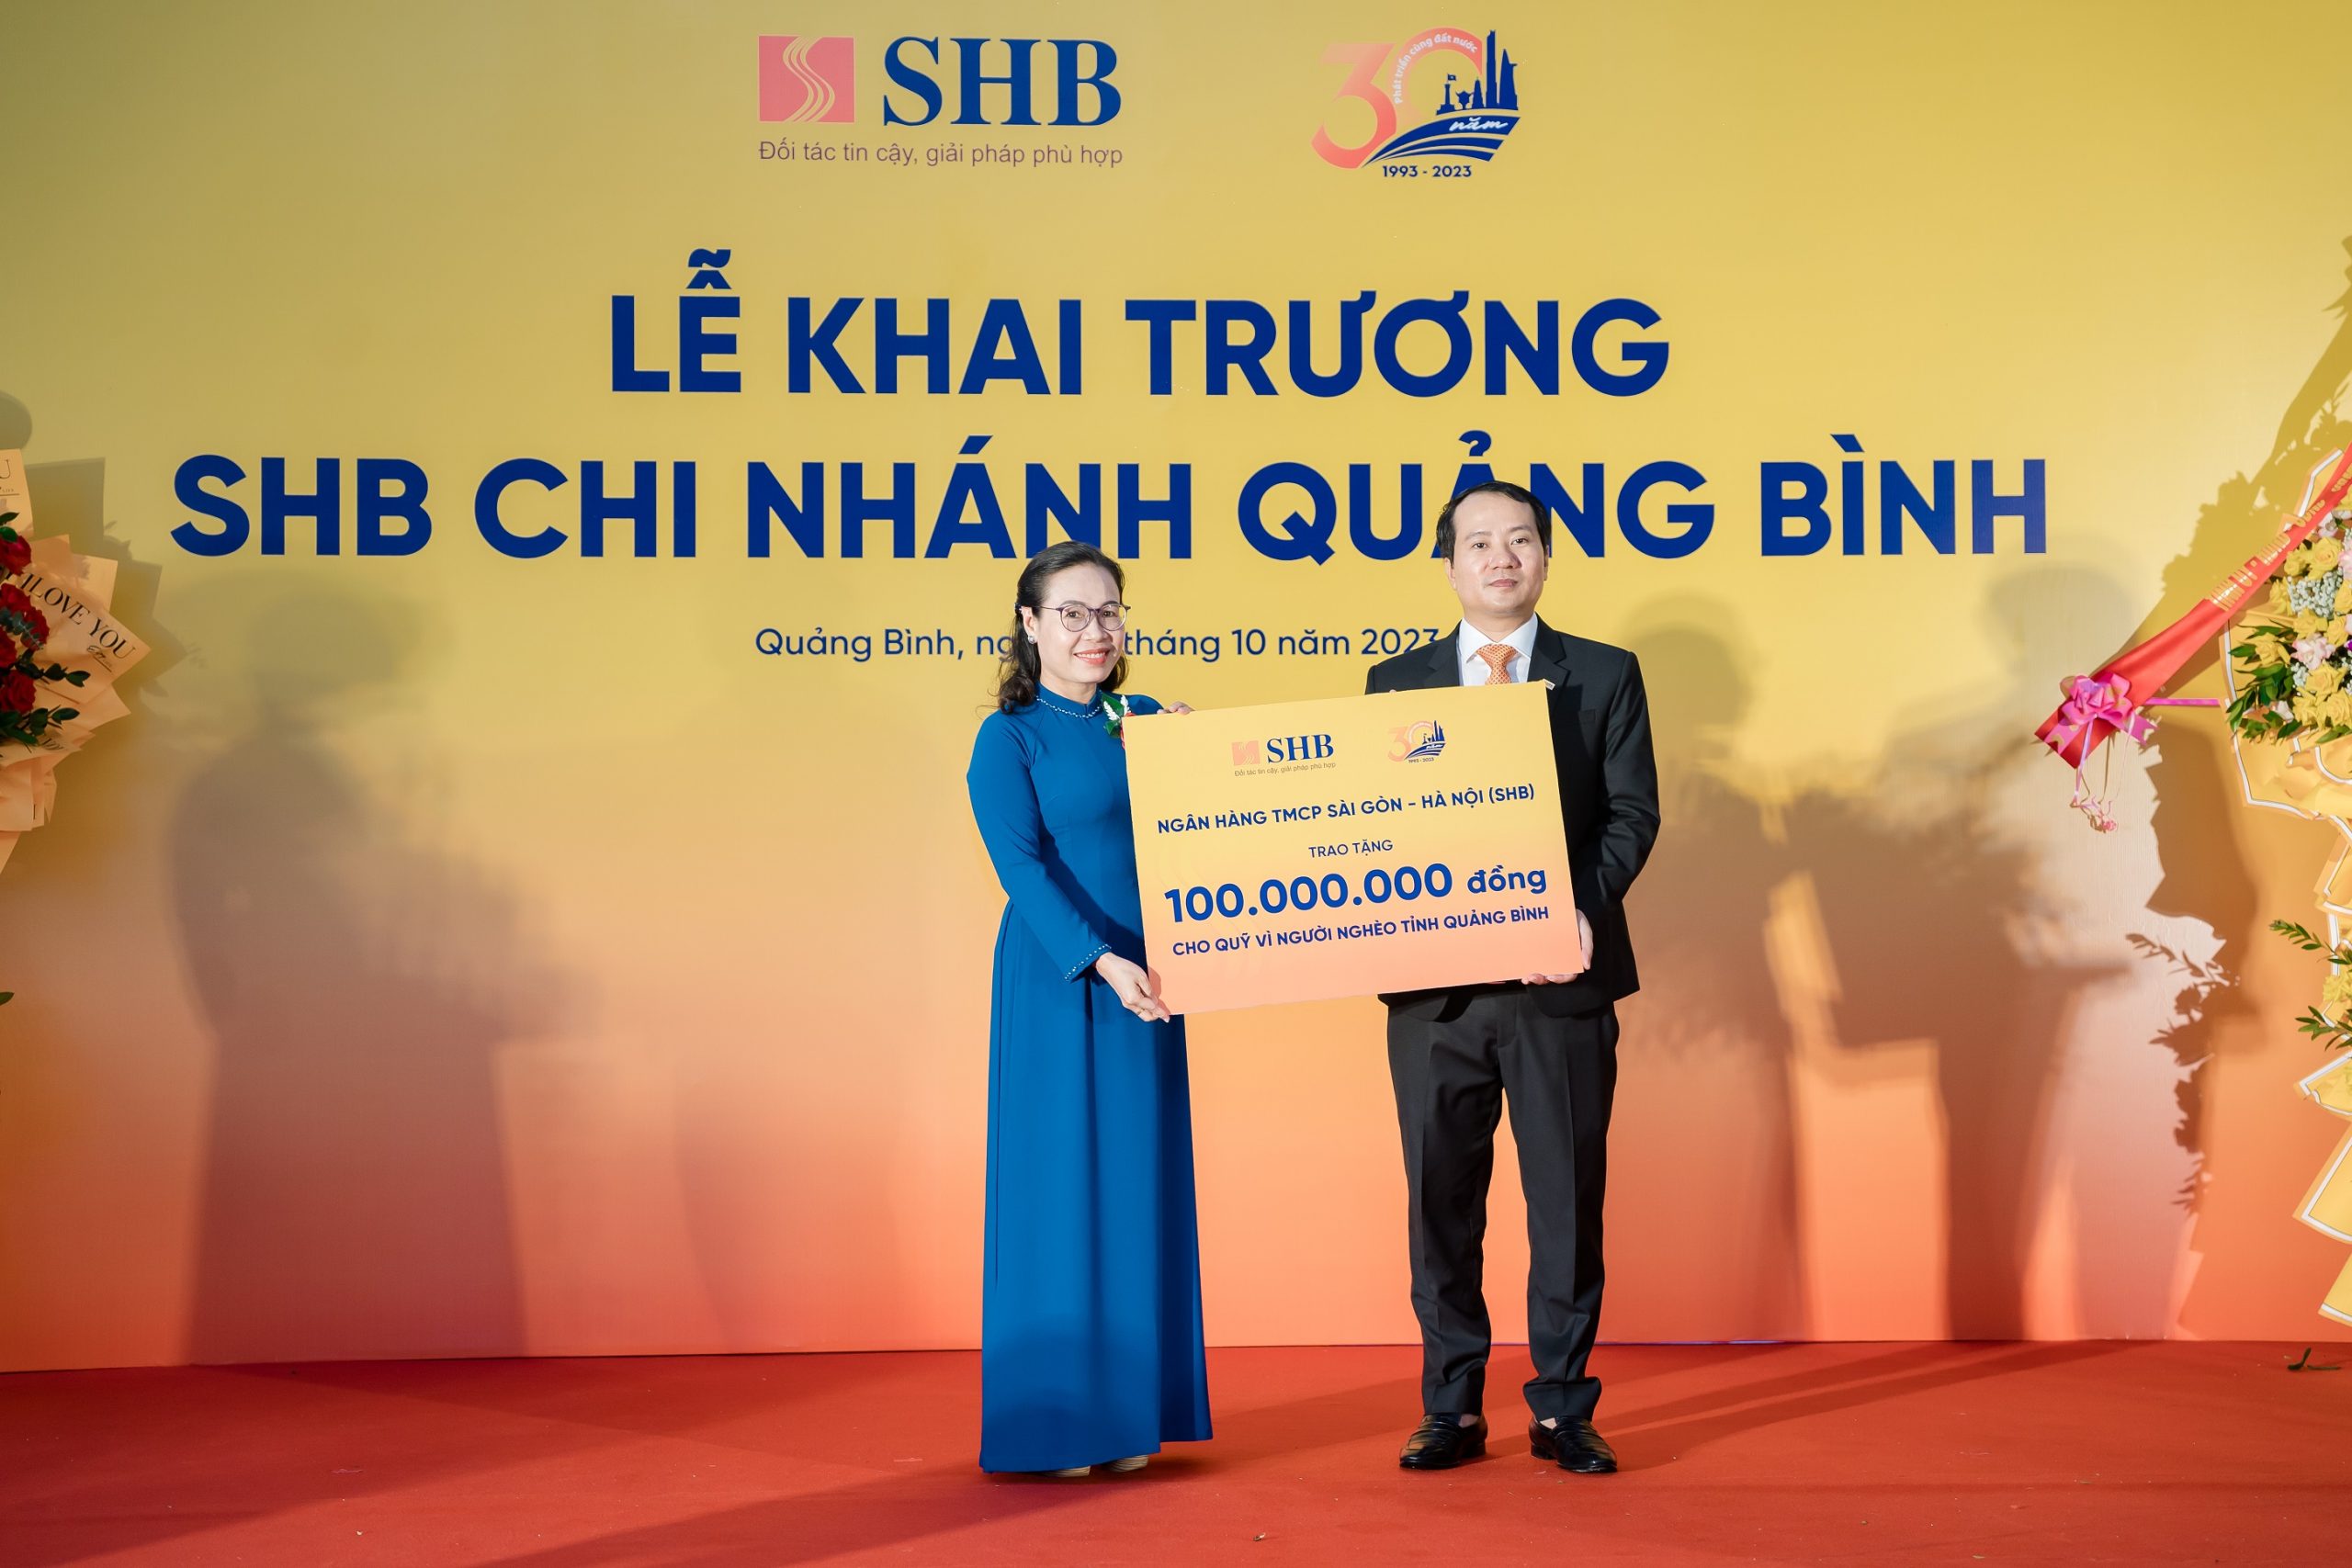 Ông Trần Nam Hải – Giám đốc SHB Quảng Bình đại diện ngân hàng trao tặng Quỹ Vì người nghèo tỉnh Quảng Bình 100 triệu đồng